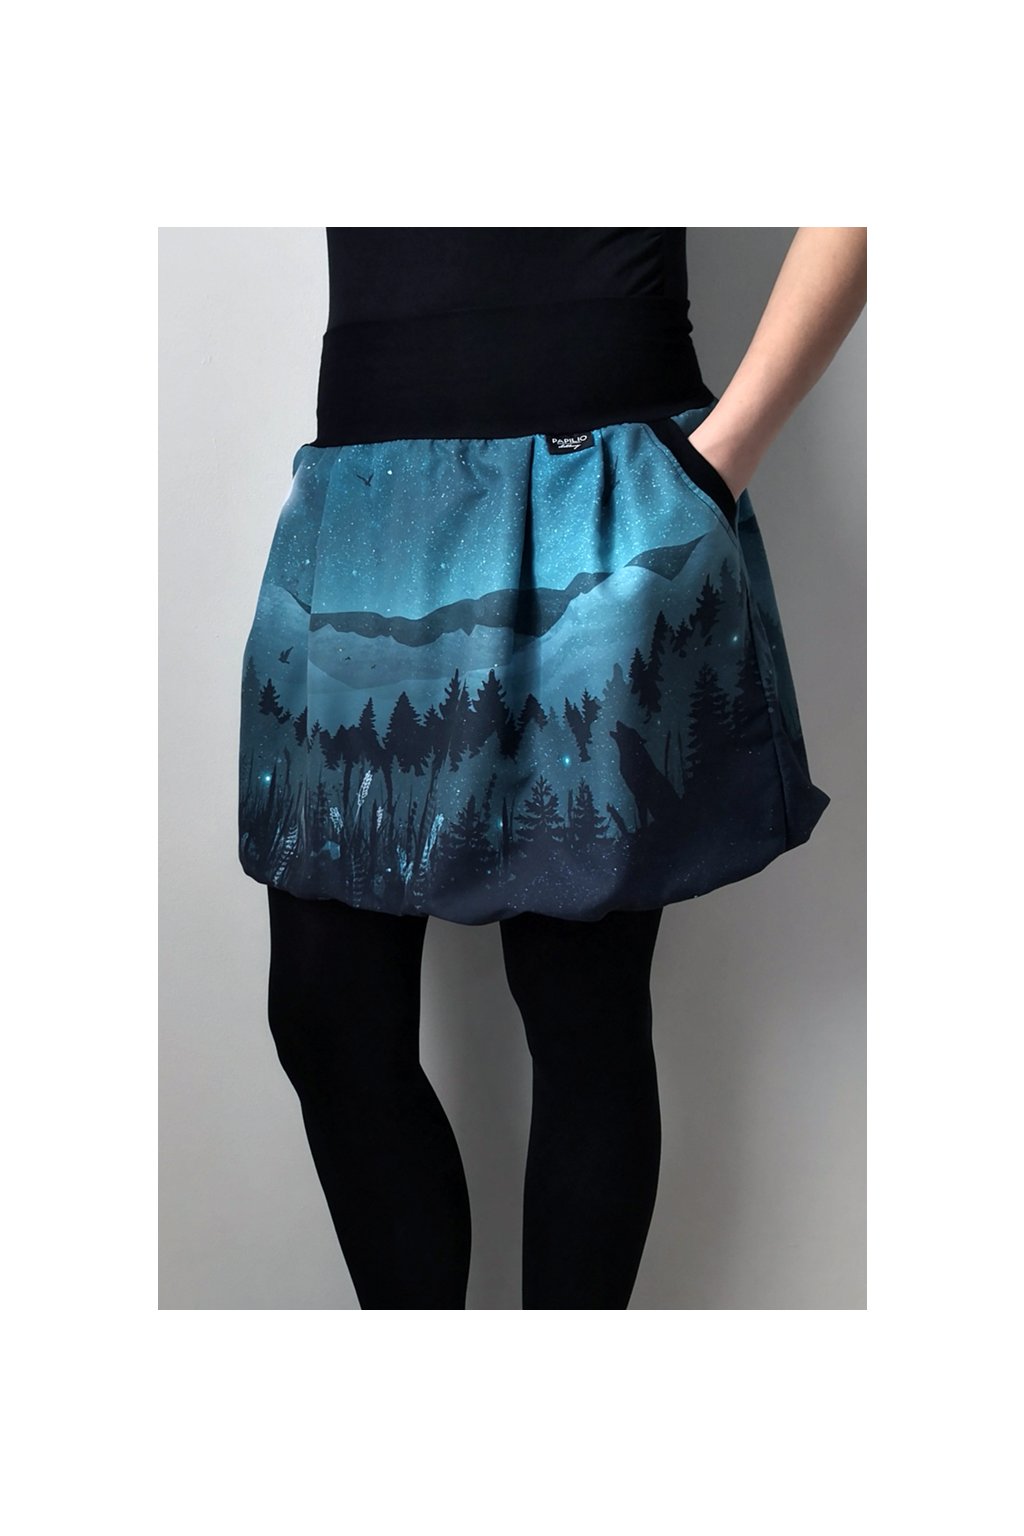 Balonová sukně Vlk za úplňku | polyester